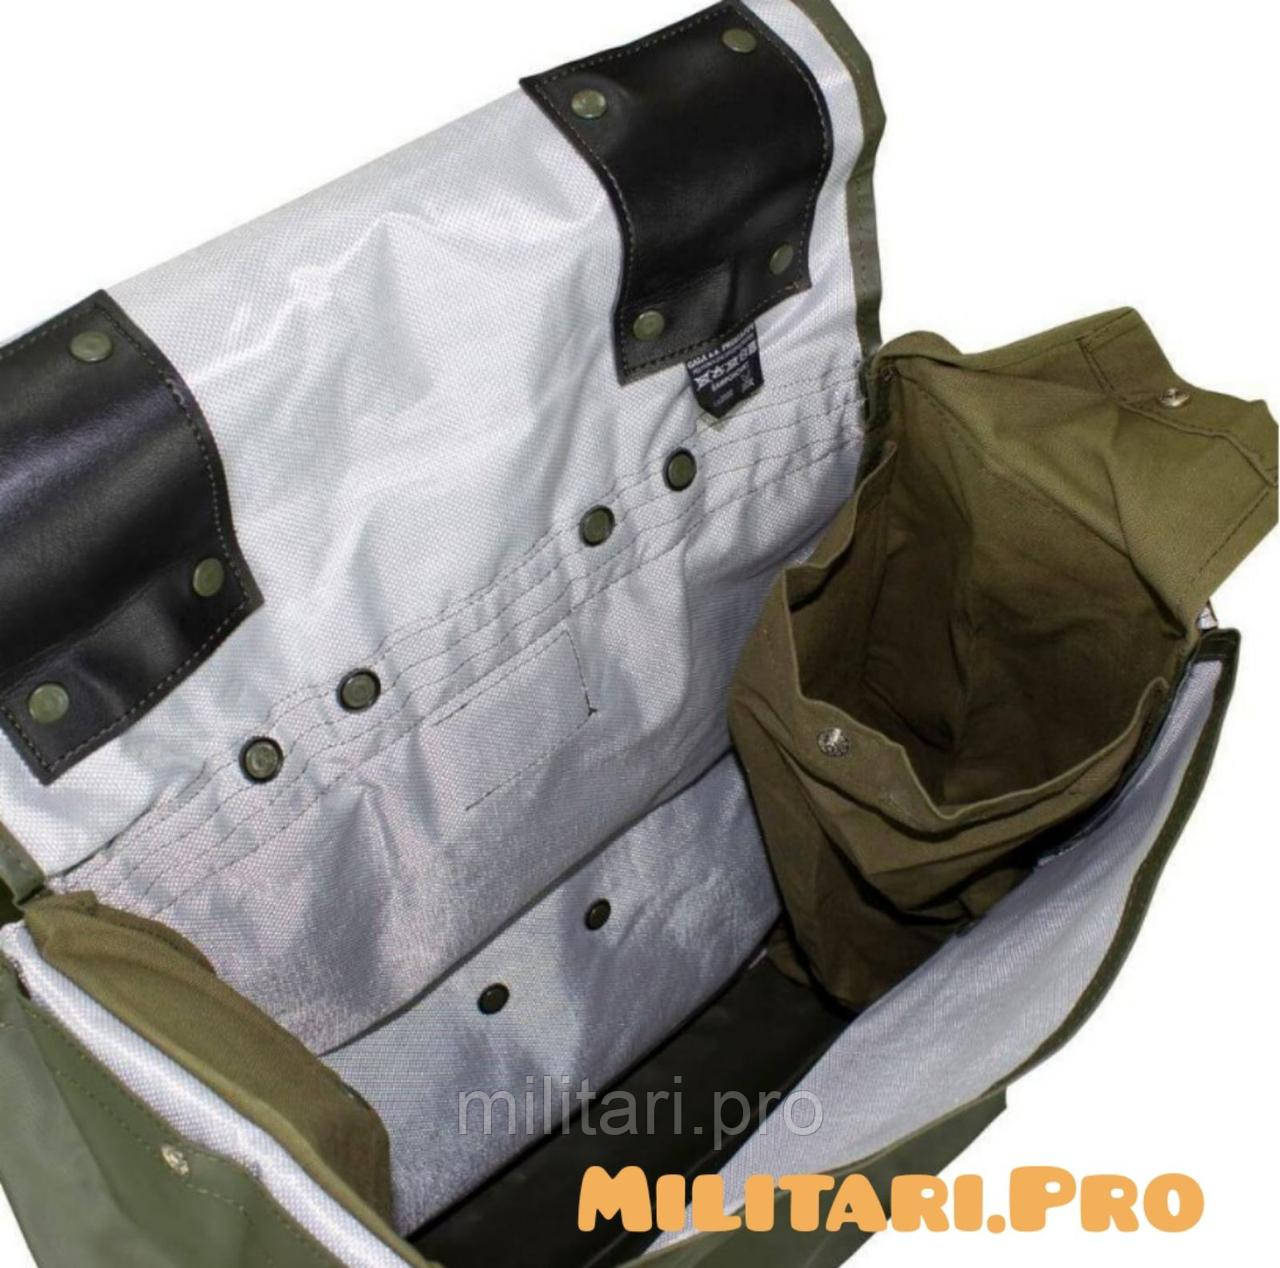 Купити - Рюкзак армії Чехії M85. Оригінал. 45 літрів. Складське зберігання.